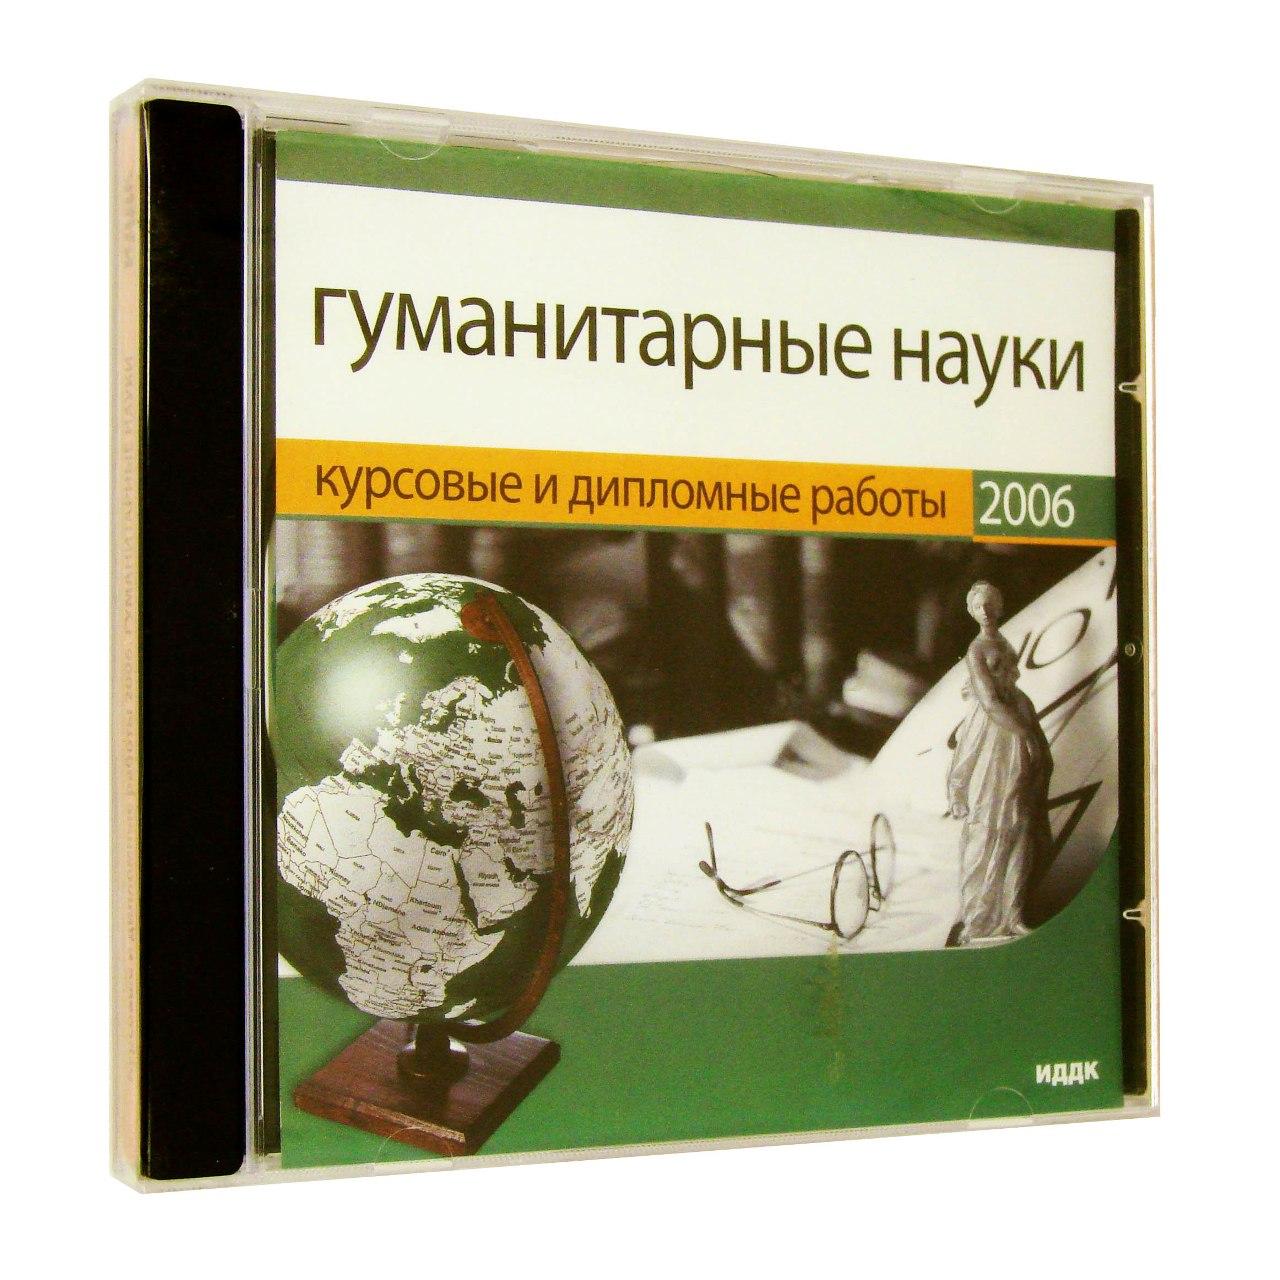 Компьютерный компакт-диск Курсовые и дипломные работы 2006. Гуманитарные науки (ПК), фирма "ИДДК", 1CD